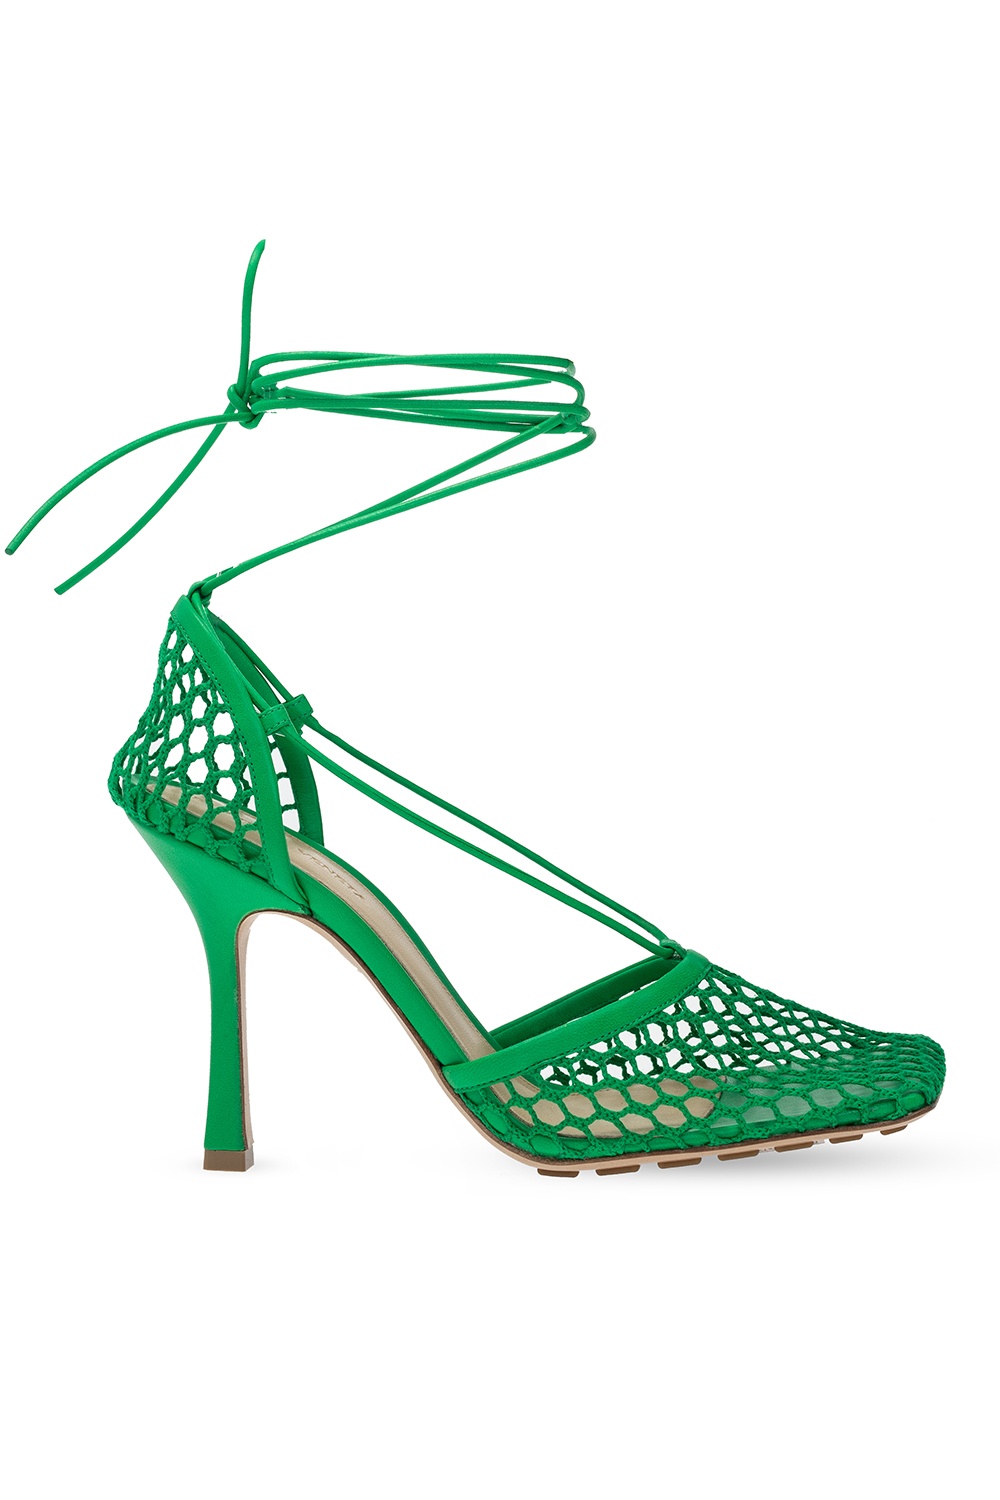 Bottega Veneta Stretch Heeled Sandals Women S Shoes Ietpshops